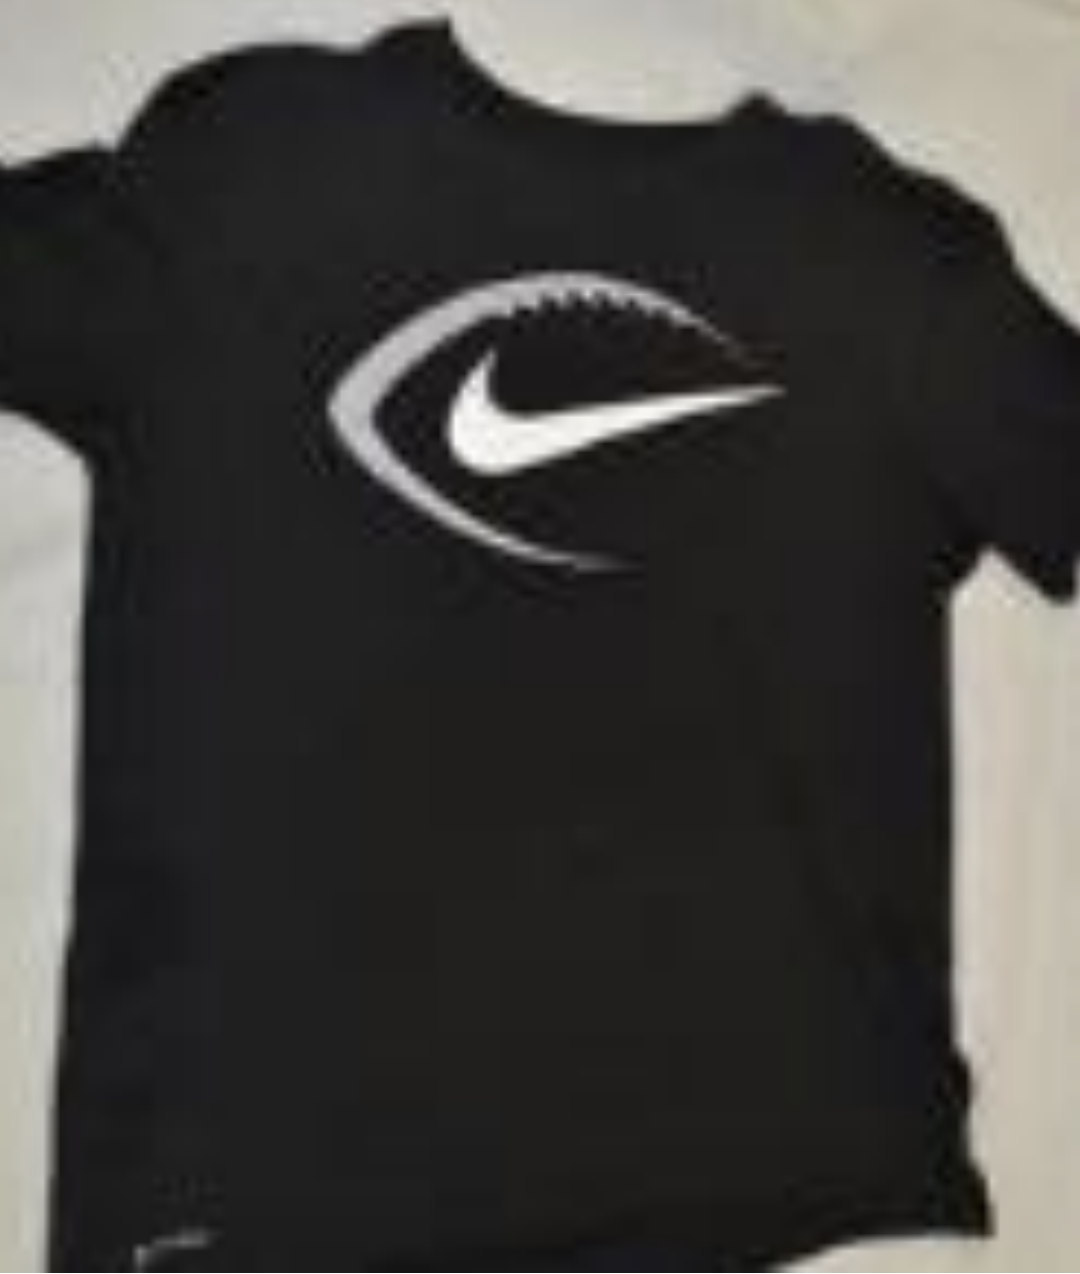 Black Nike shirt